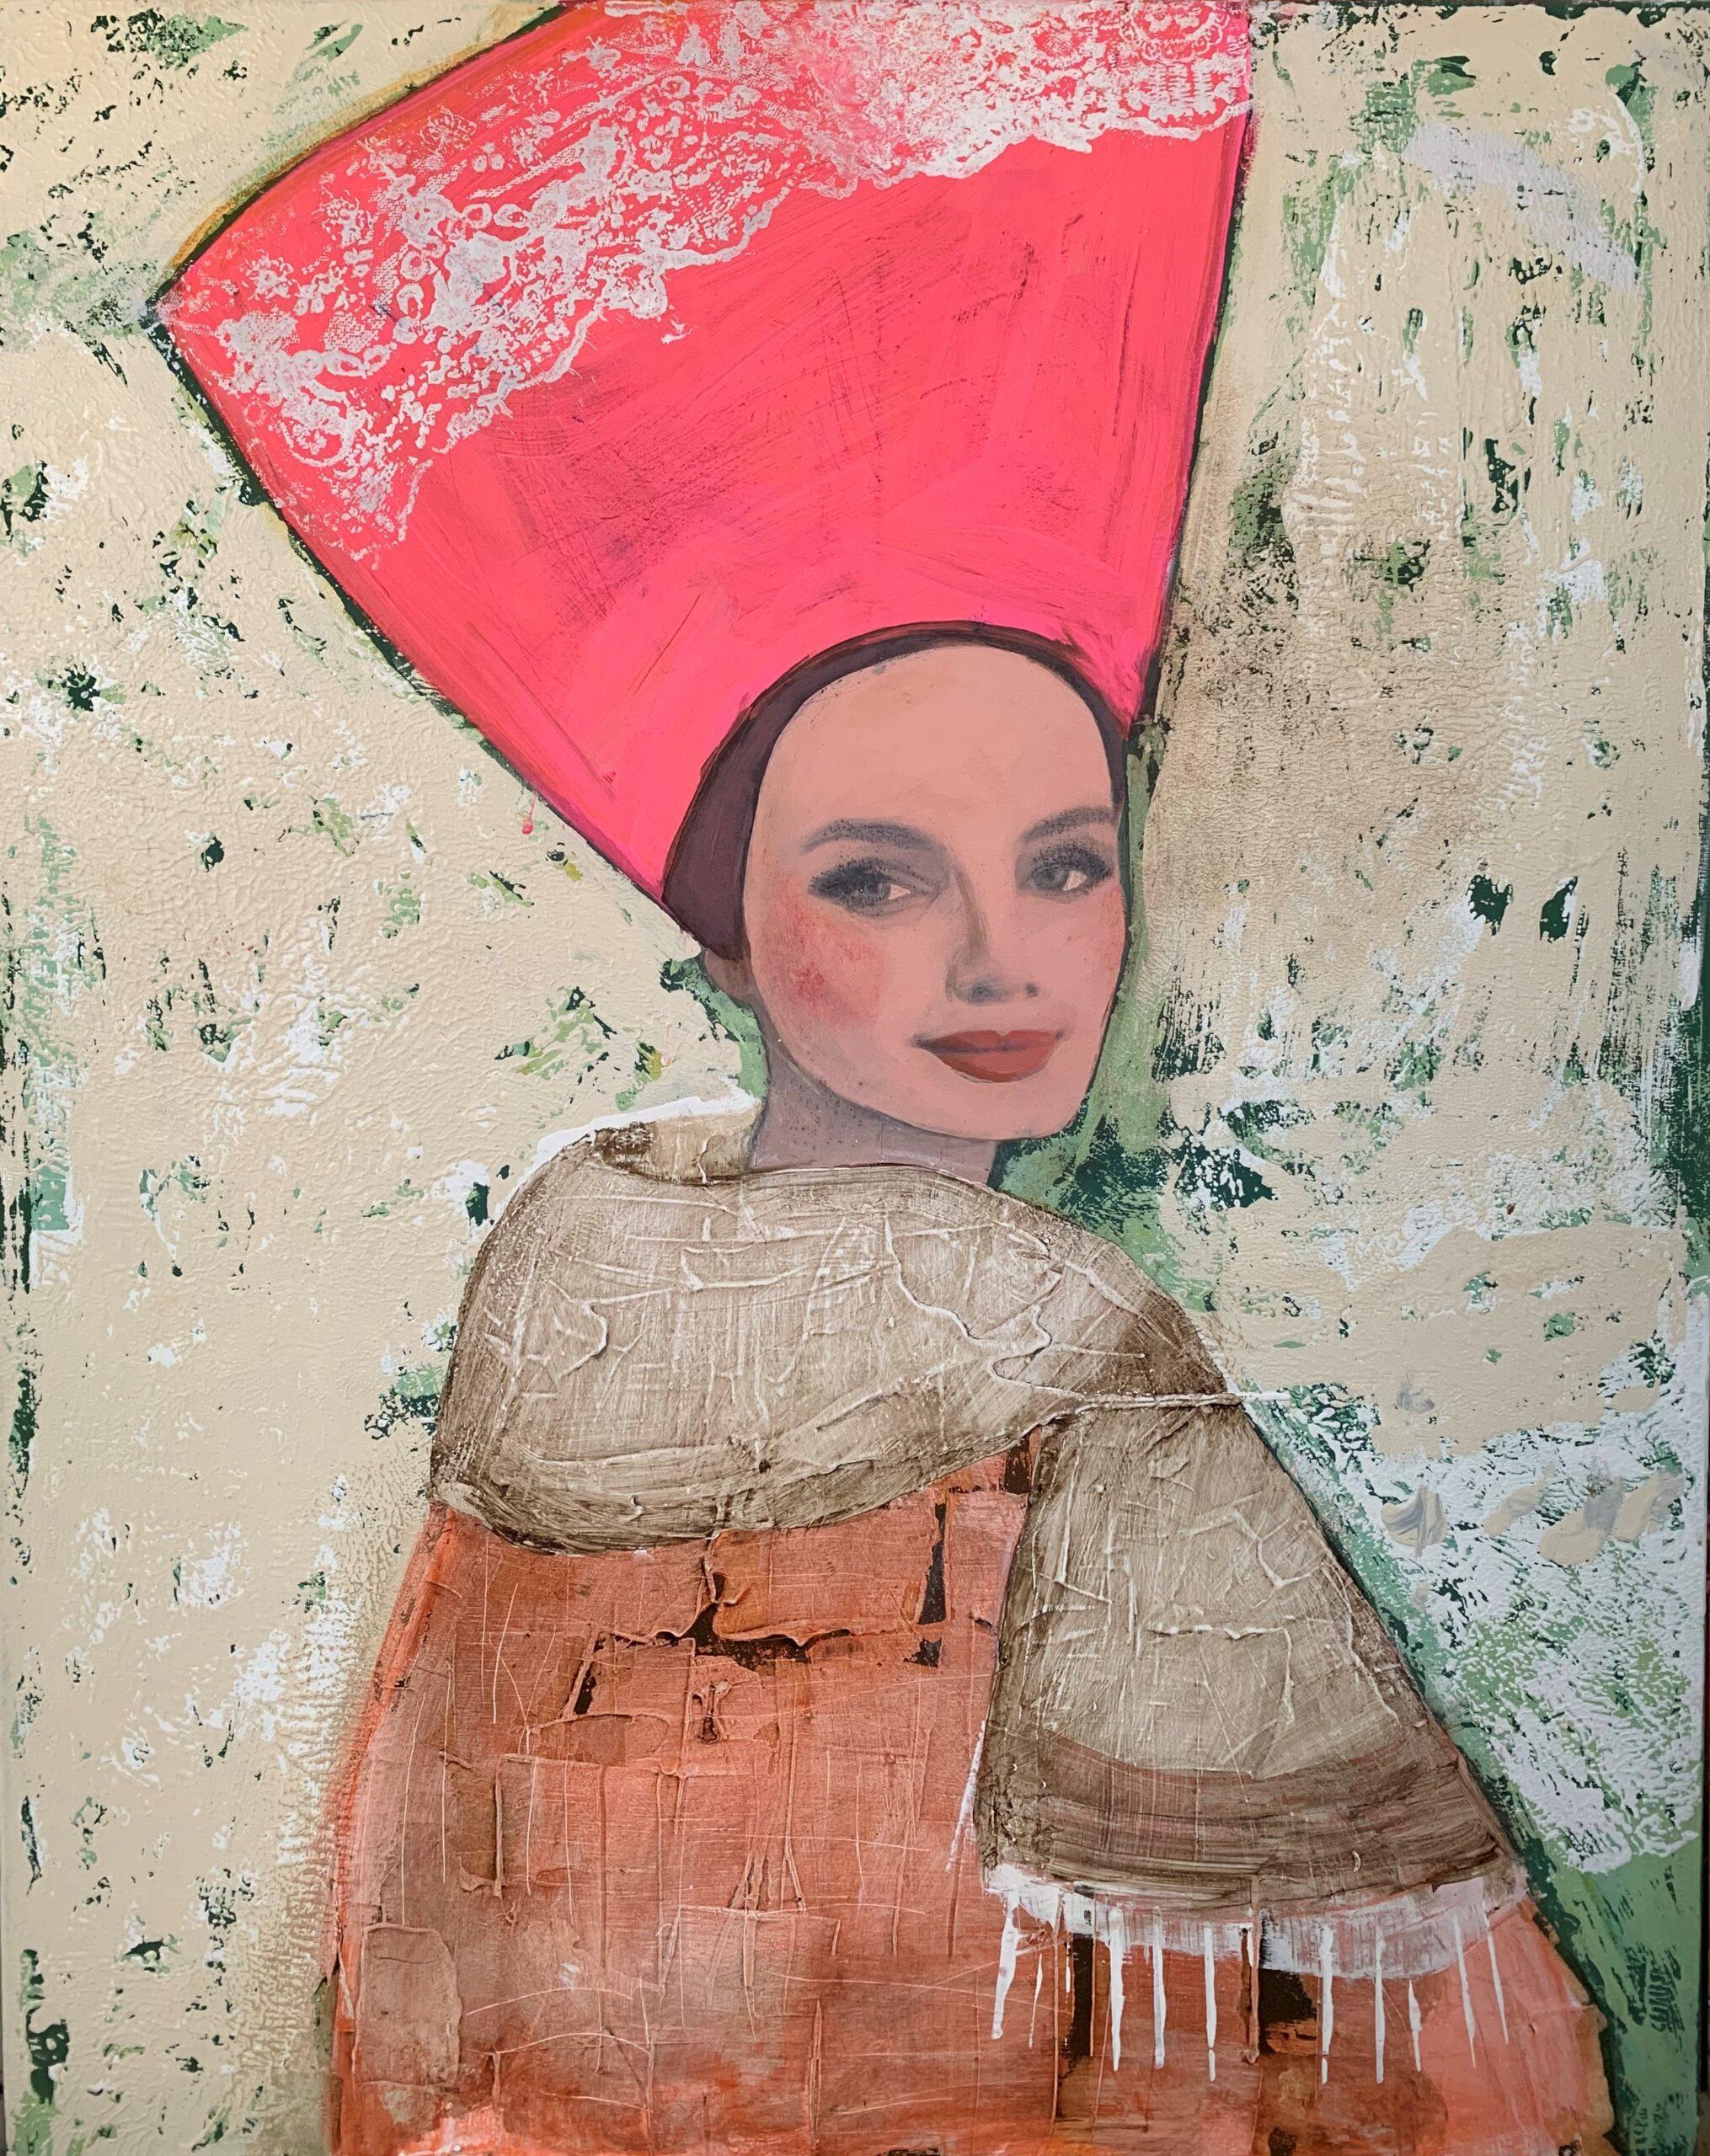 Femme avec une coiffe rose - Couleur vive Portrait, Femmes, Texture, Visage